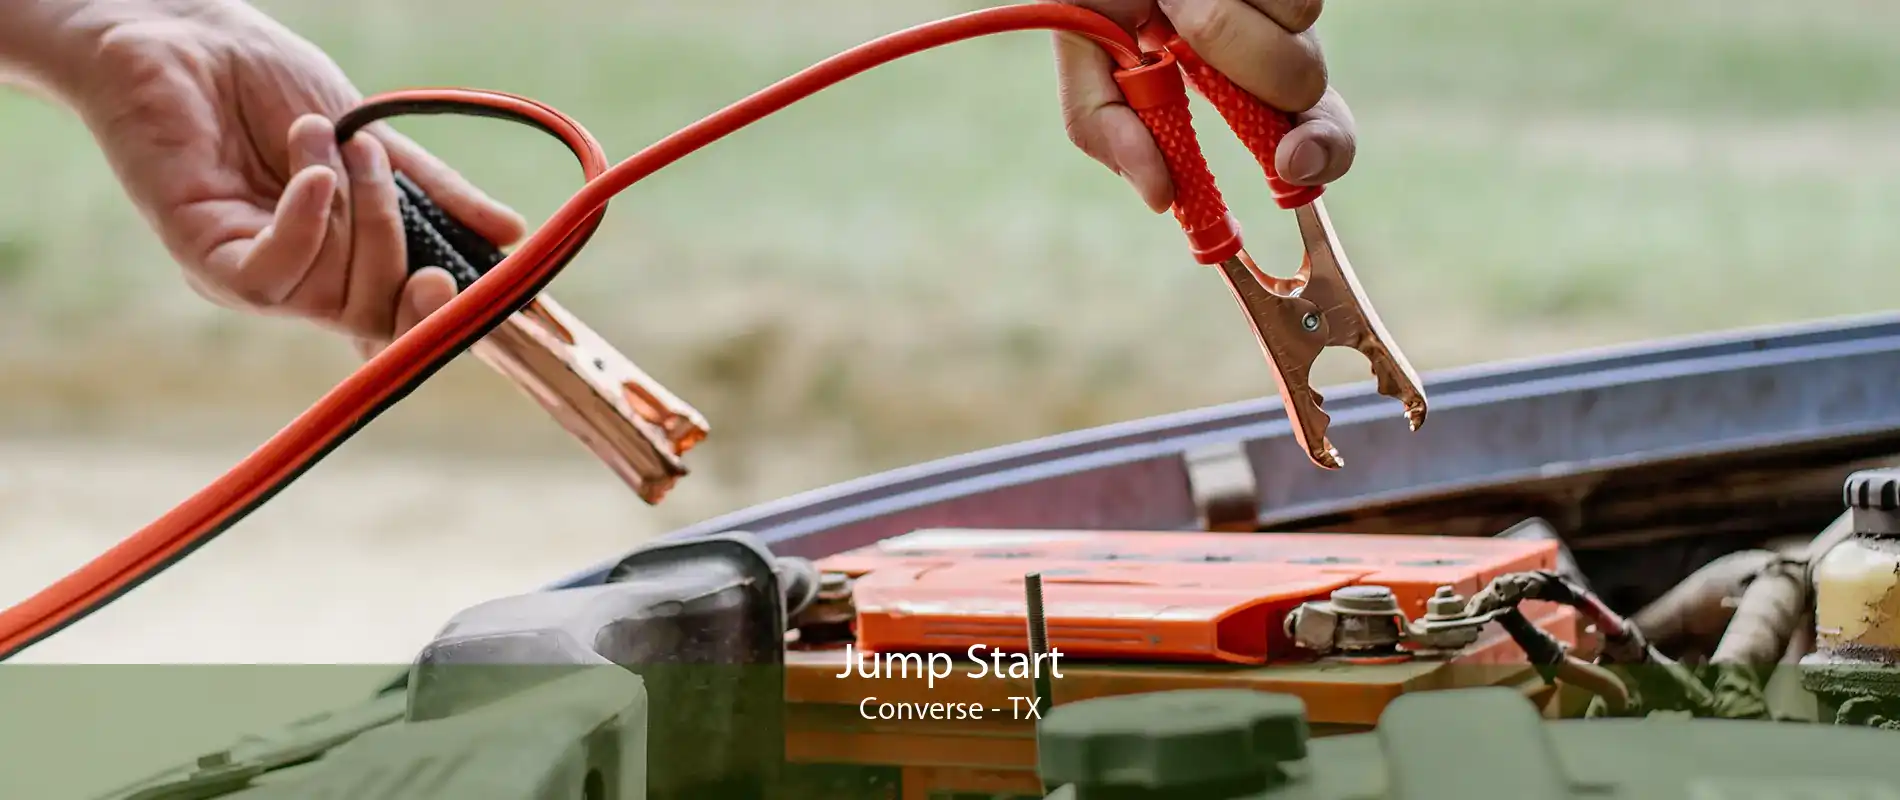 Jump Start Converse - TX